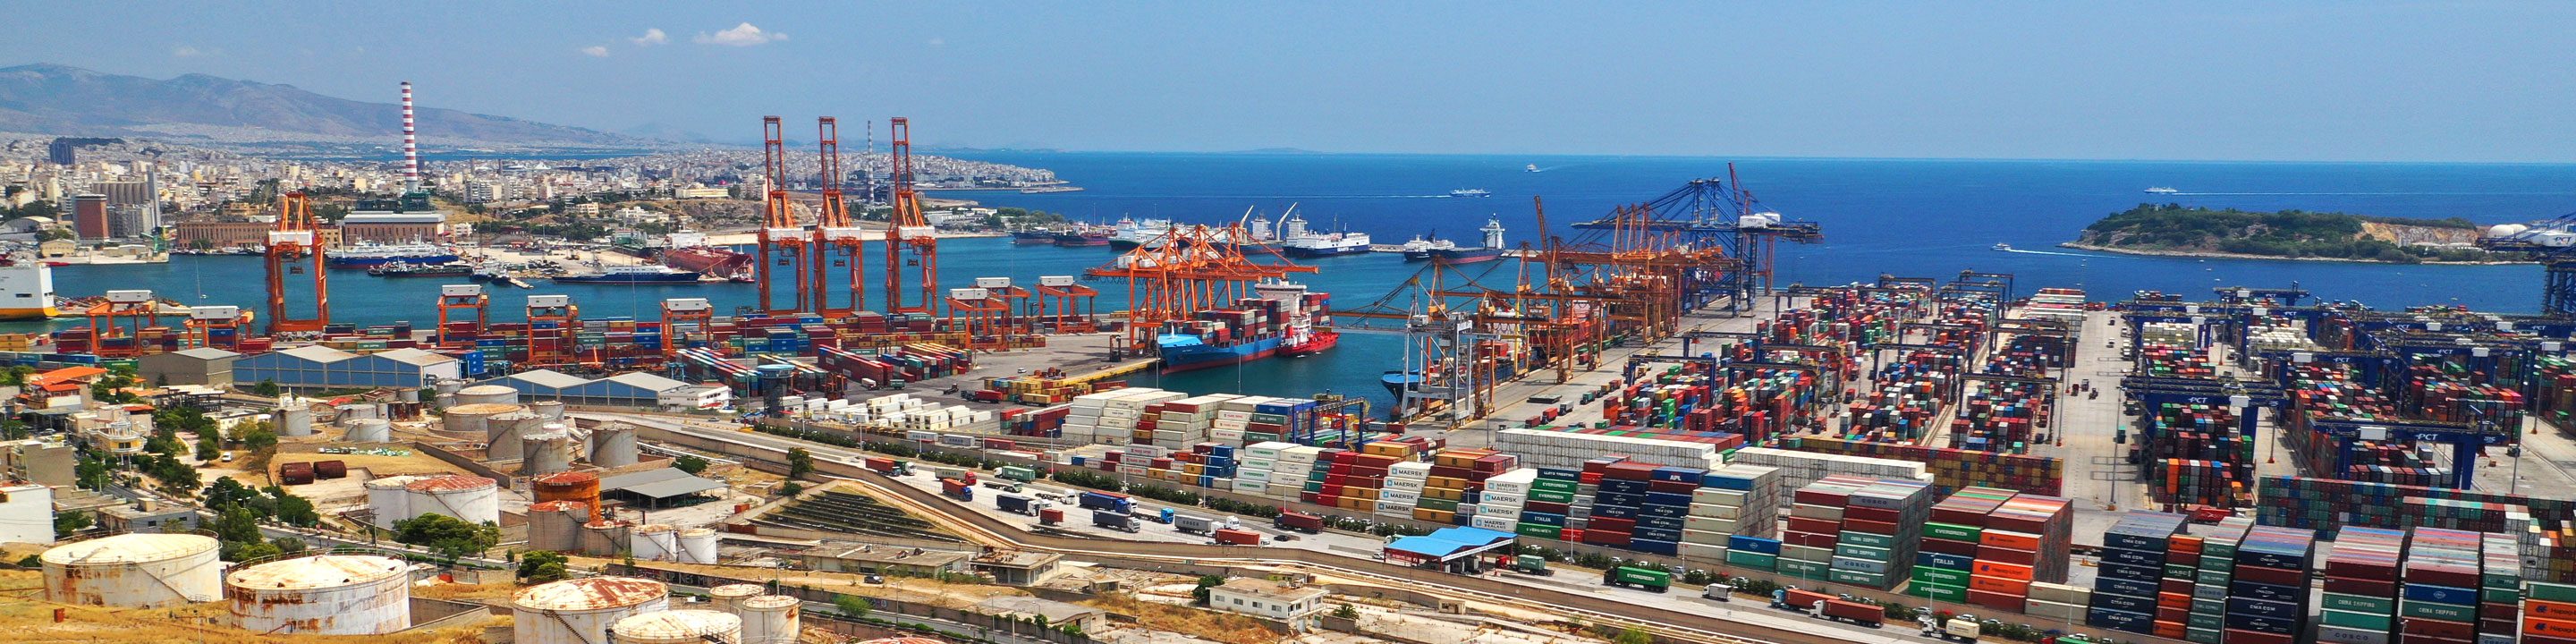 Piraeus Container Port